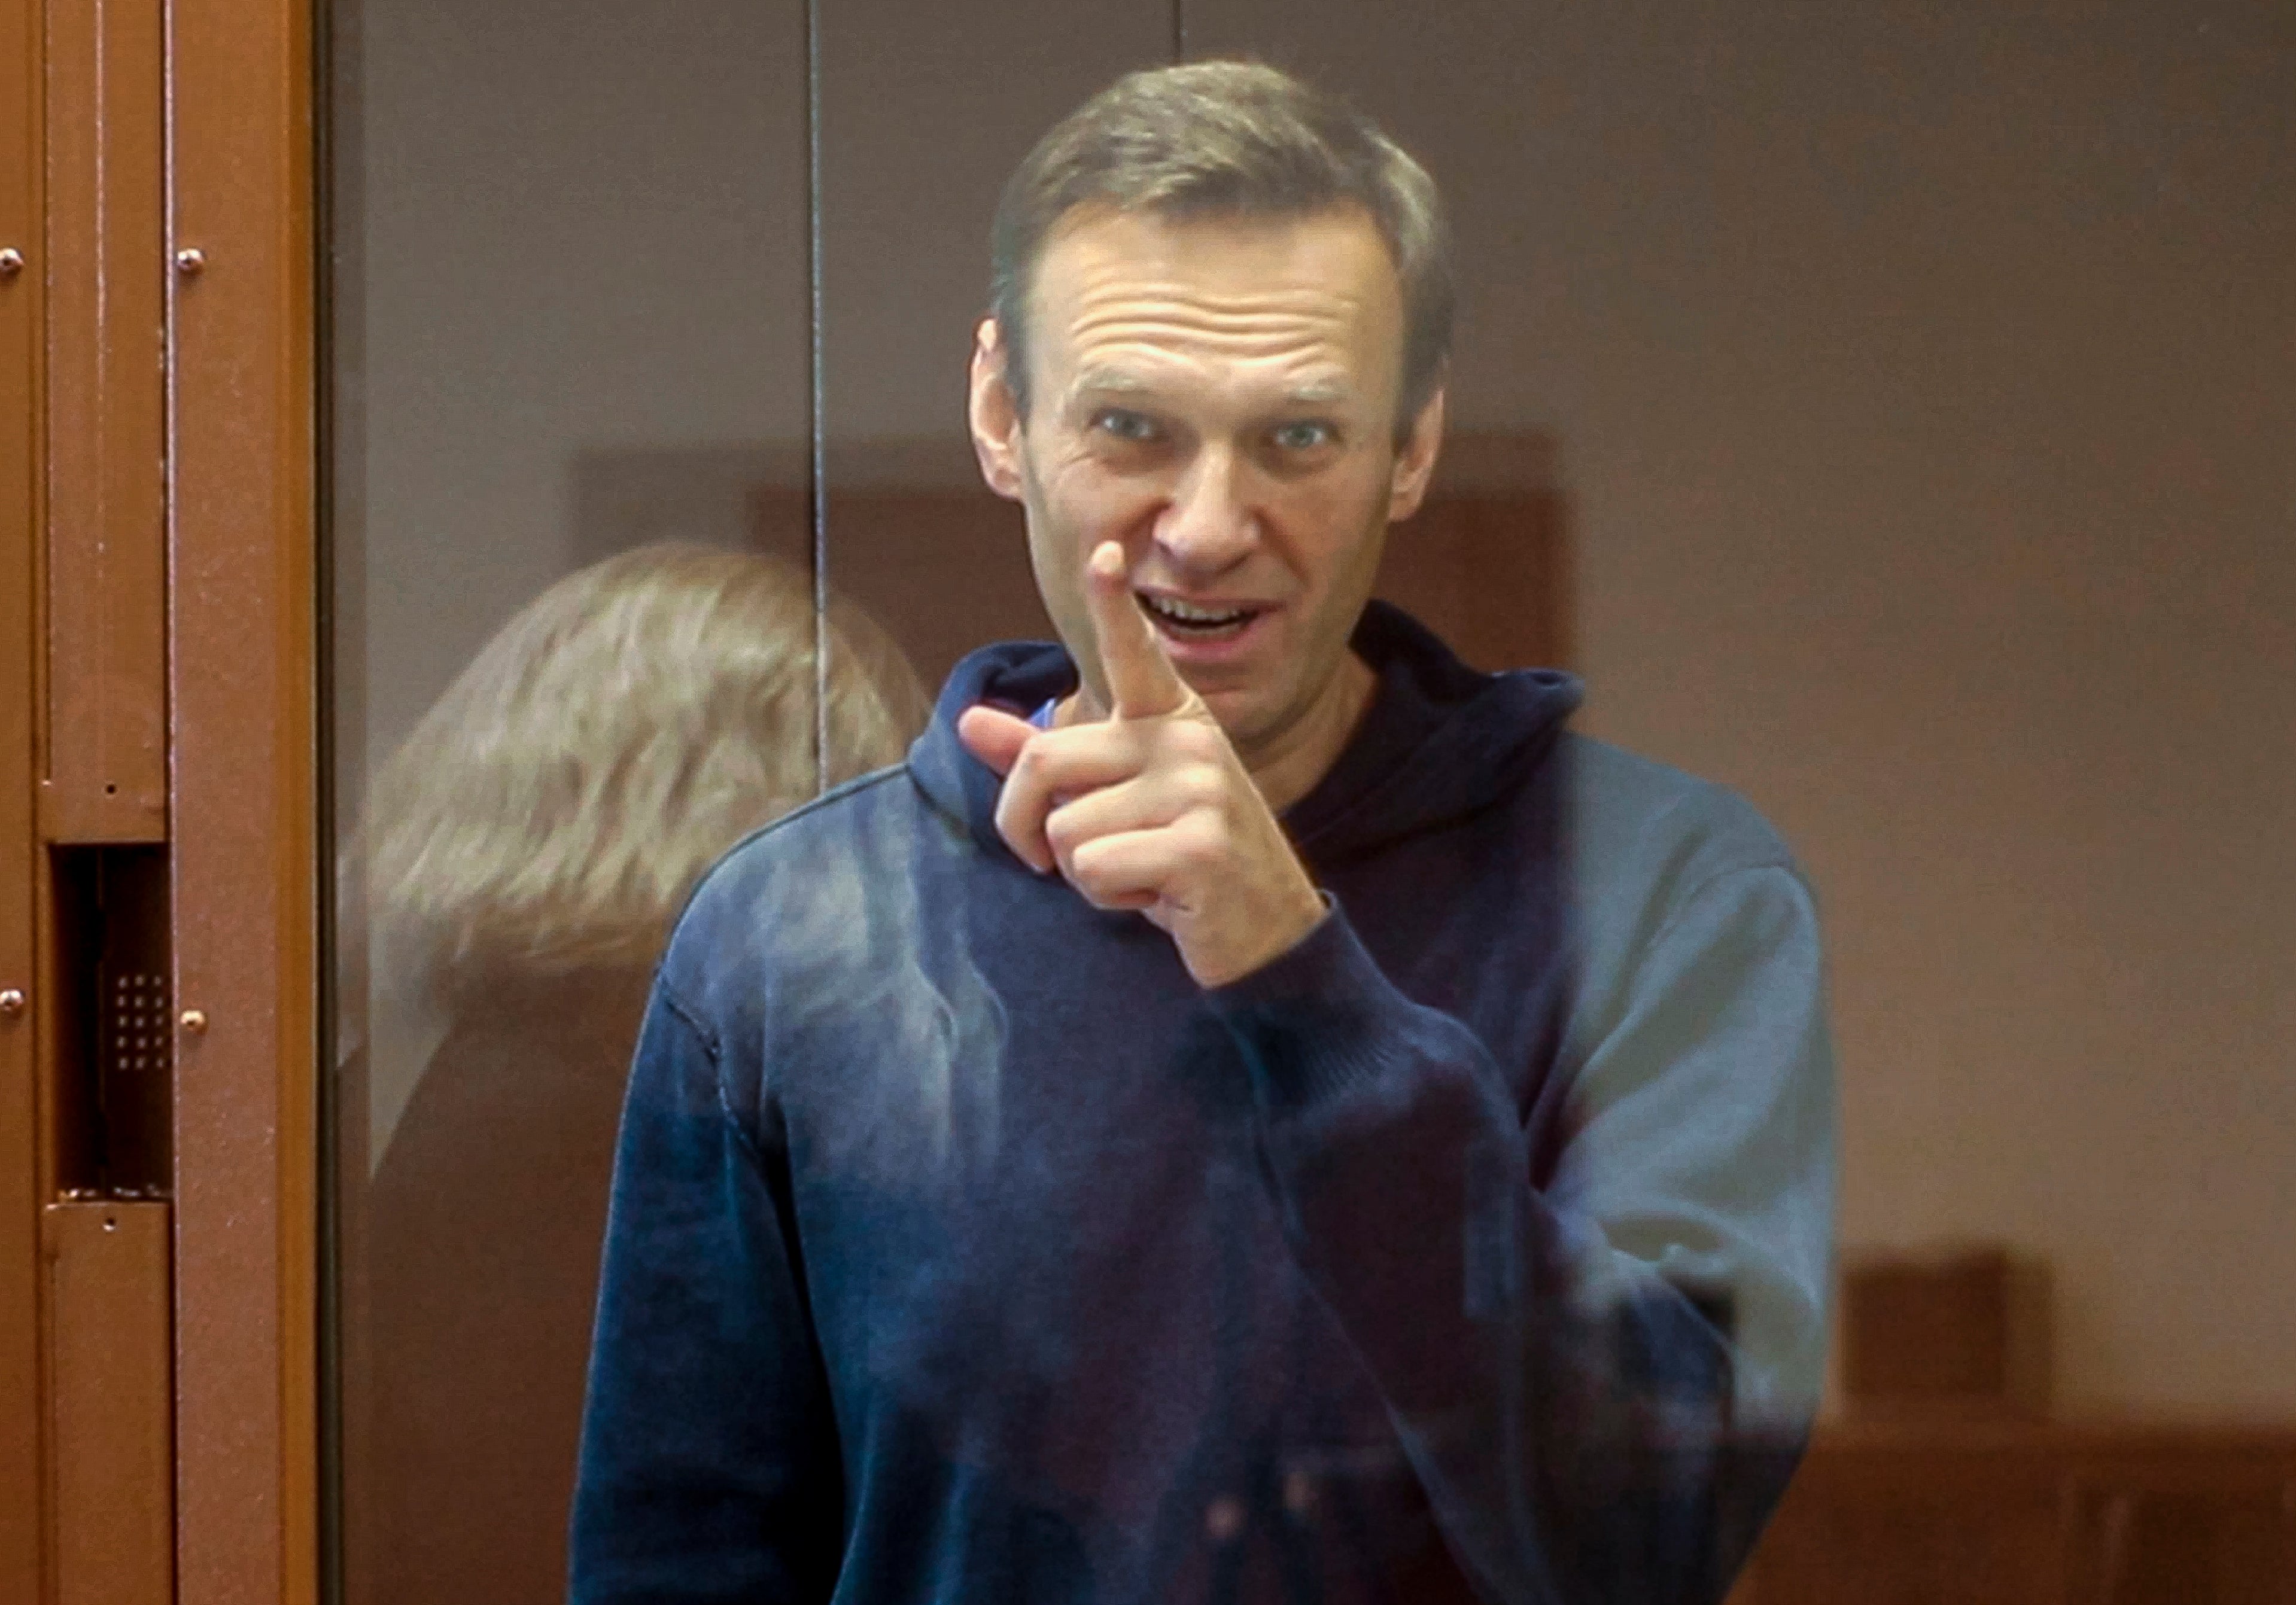 Alexei Navalny in court earlier this week